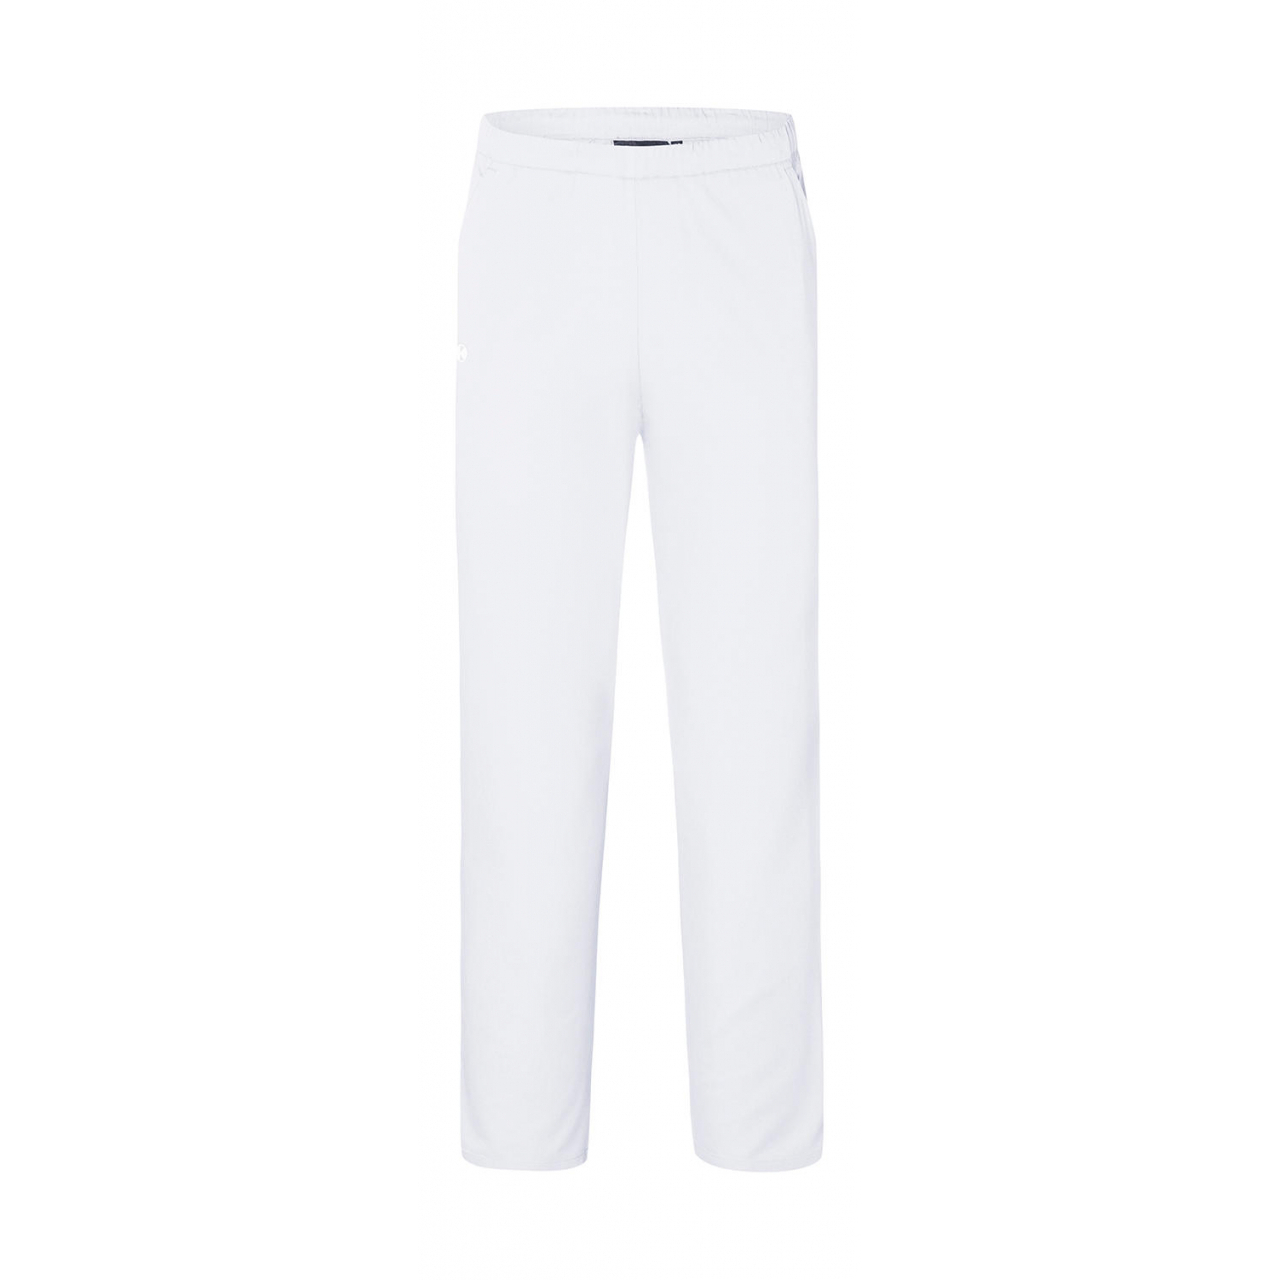 Kalhoty Karlowsky Essential - bílé, XL